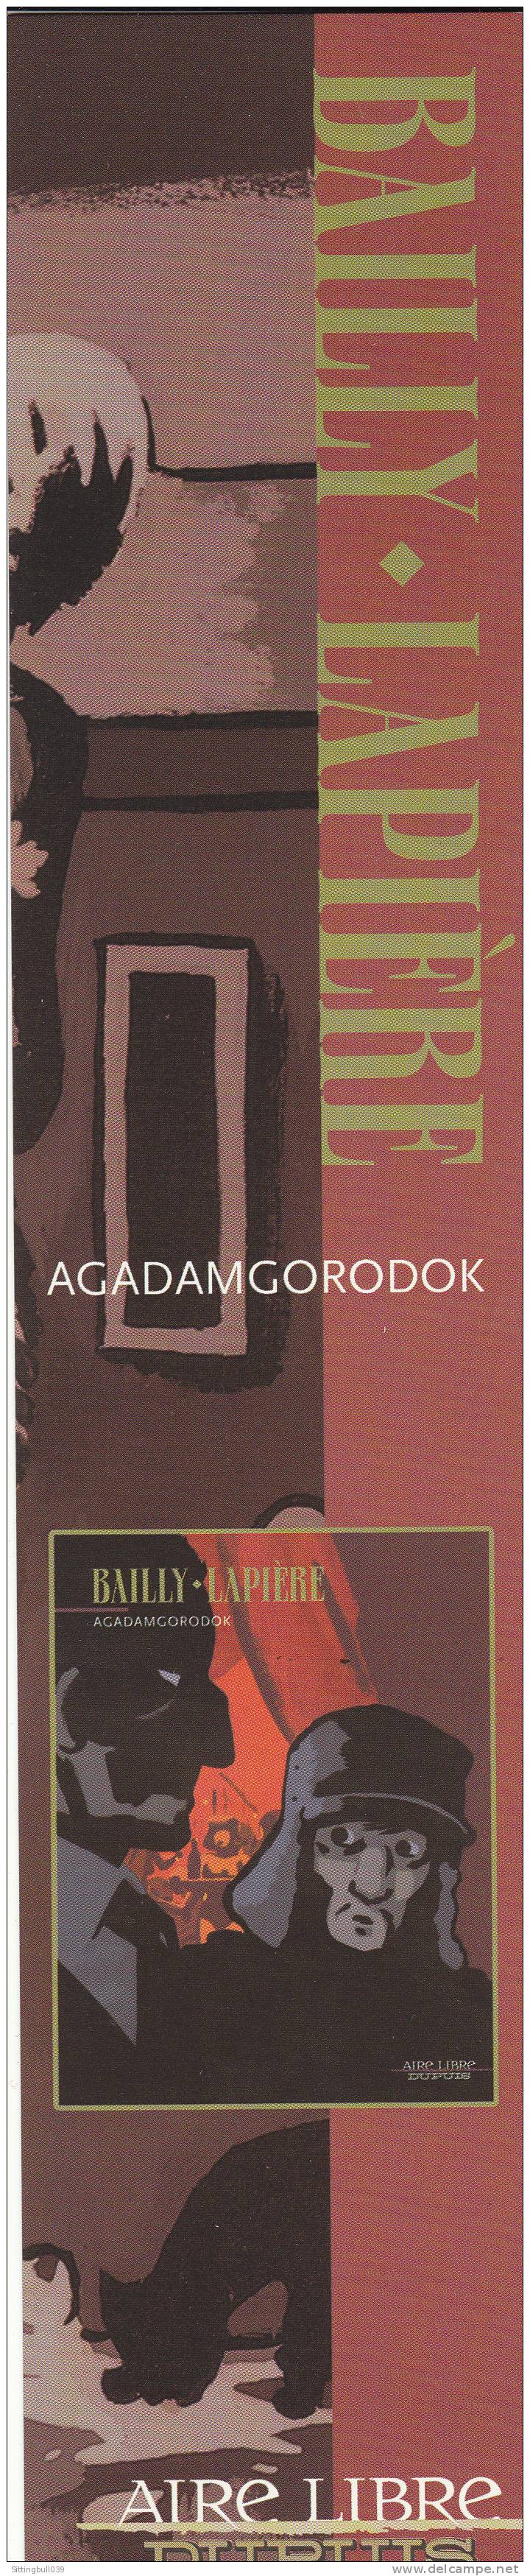 BAILLY-LAPIÈRE. Marque-page Pub Pour La Sortie De AGADAMGORODOK Et Pour Les 15 Ans De Dupuis/Aire Libre. 2003/2004 - Bookmarks